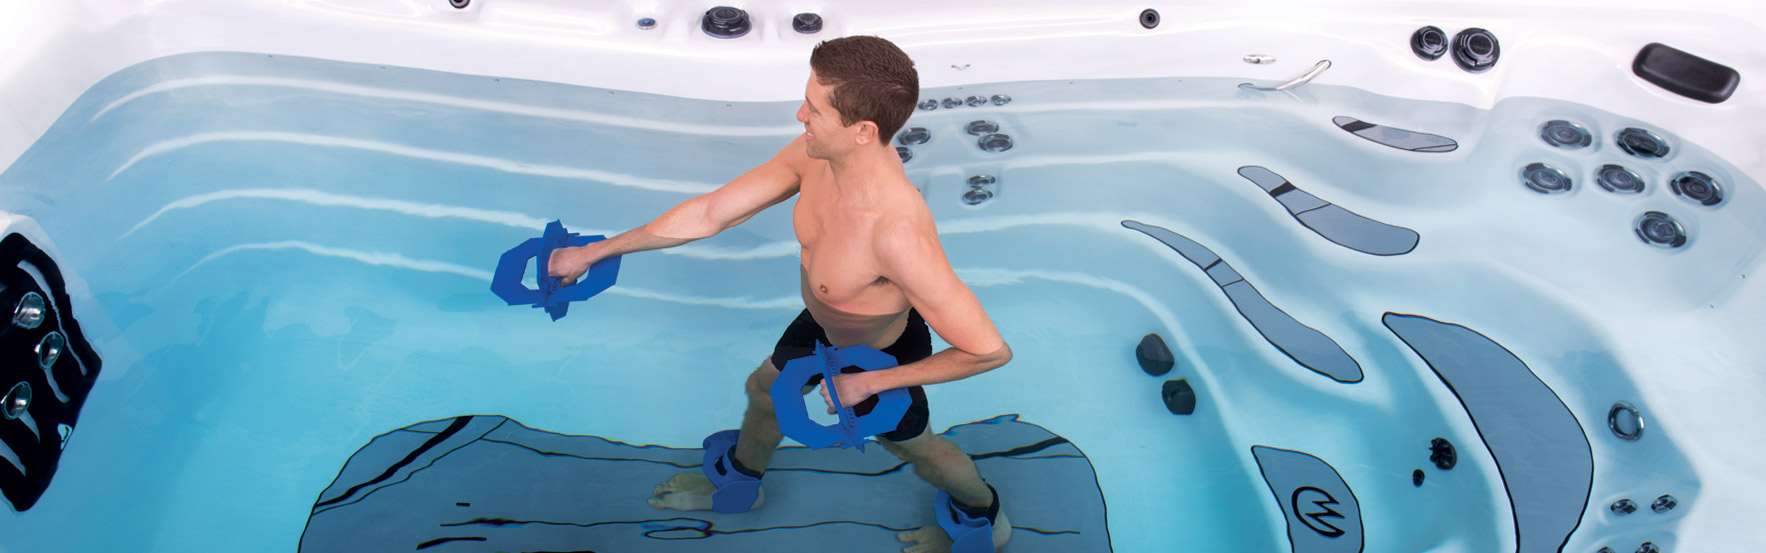 ejercicio en un swim spa by master spas